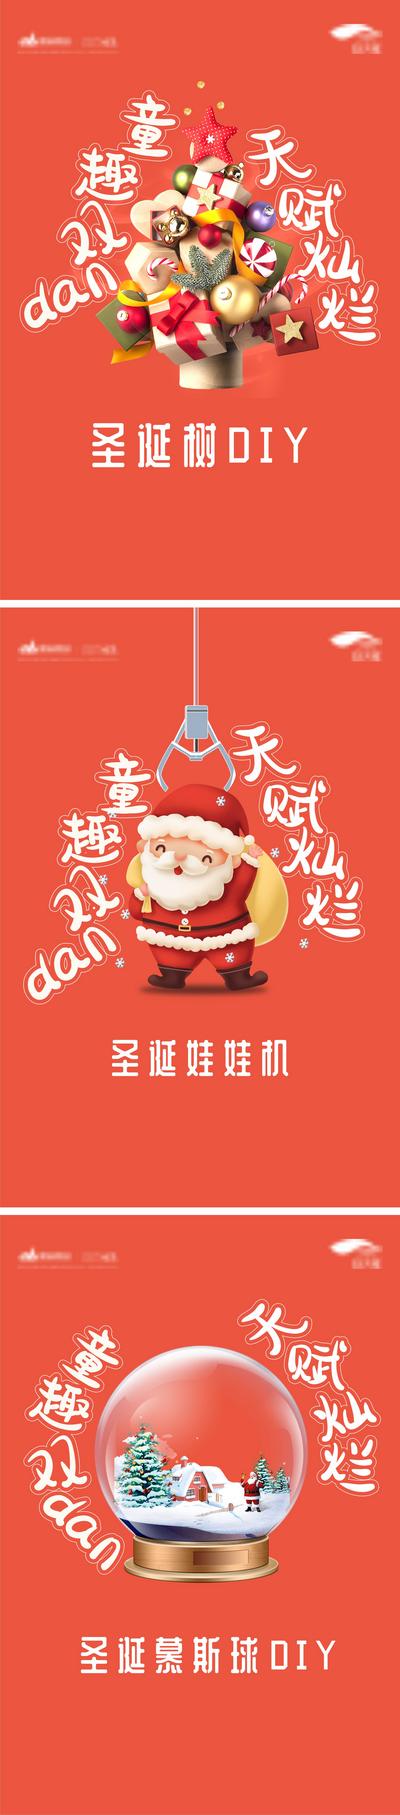 南门网 海报 房地产 公历节日 圣诞节 圣诞树 卡通 DIY  圣诞球 圣诞老人 抓娃娃